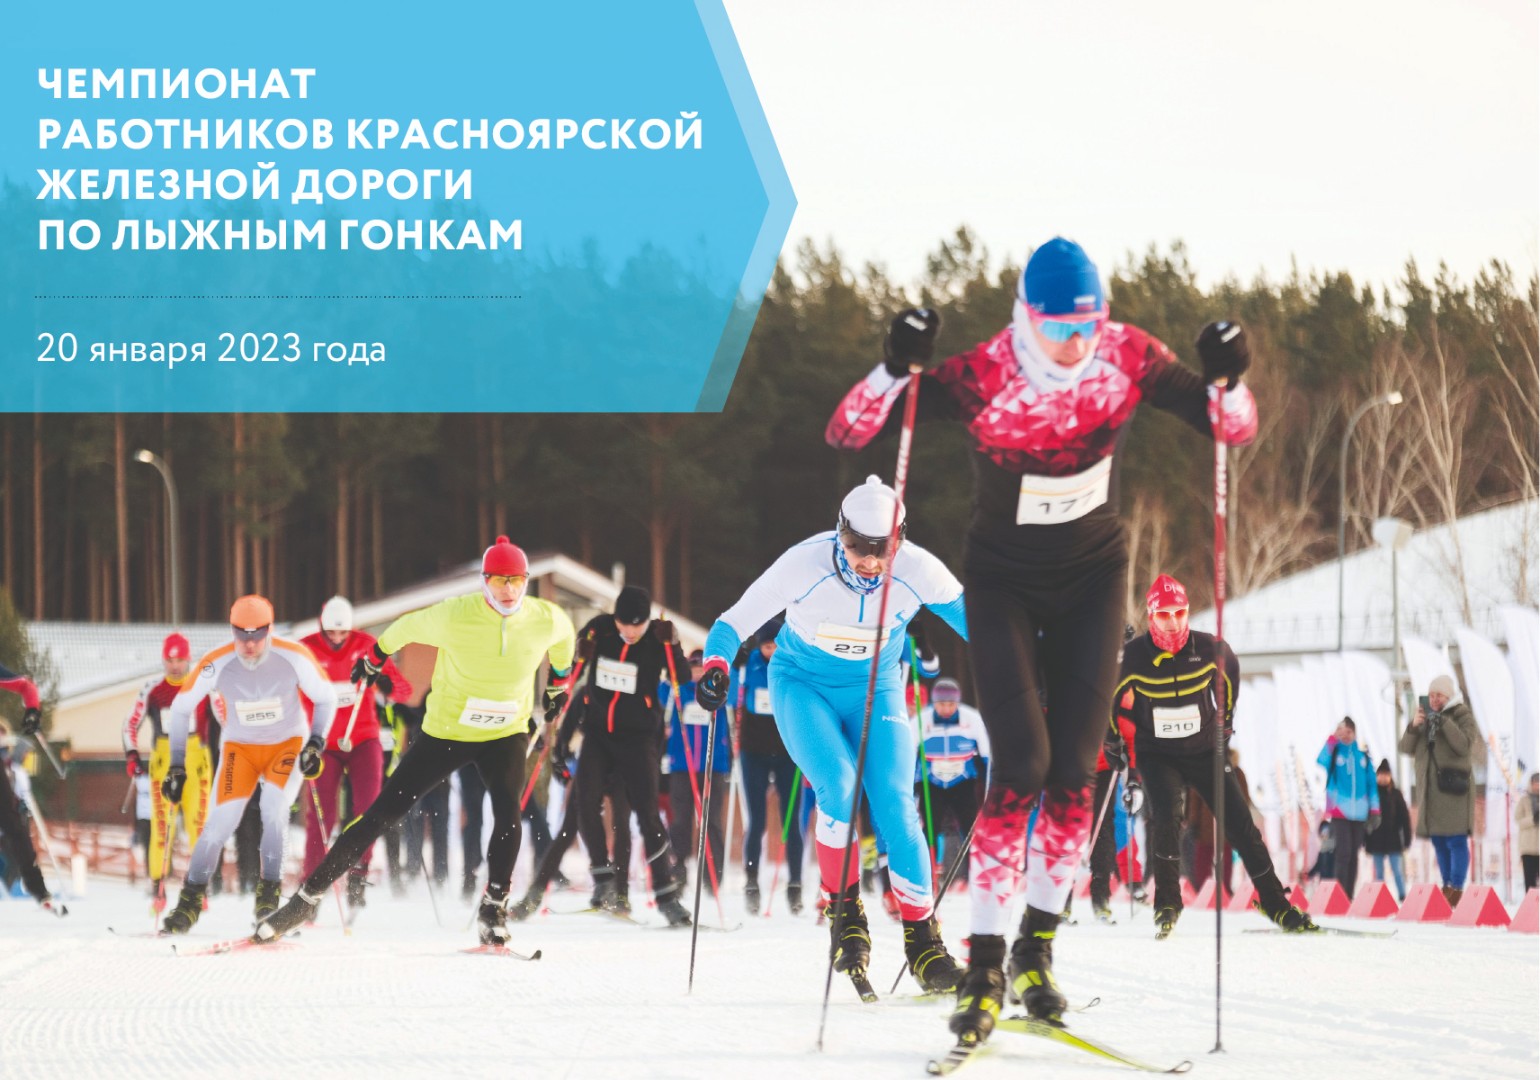 Чемпионат работников Красноярской железной дороги по лыжным гонкам